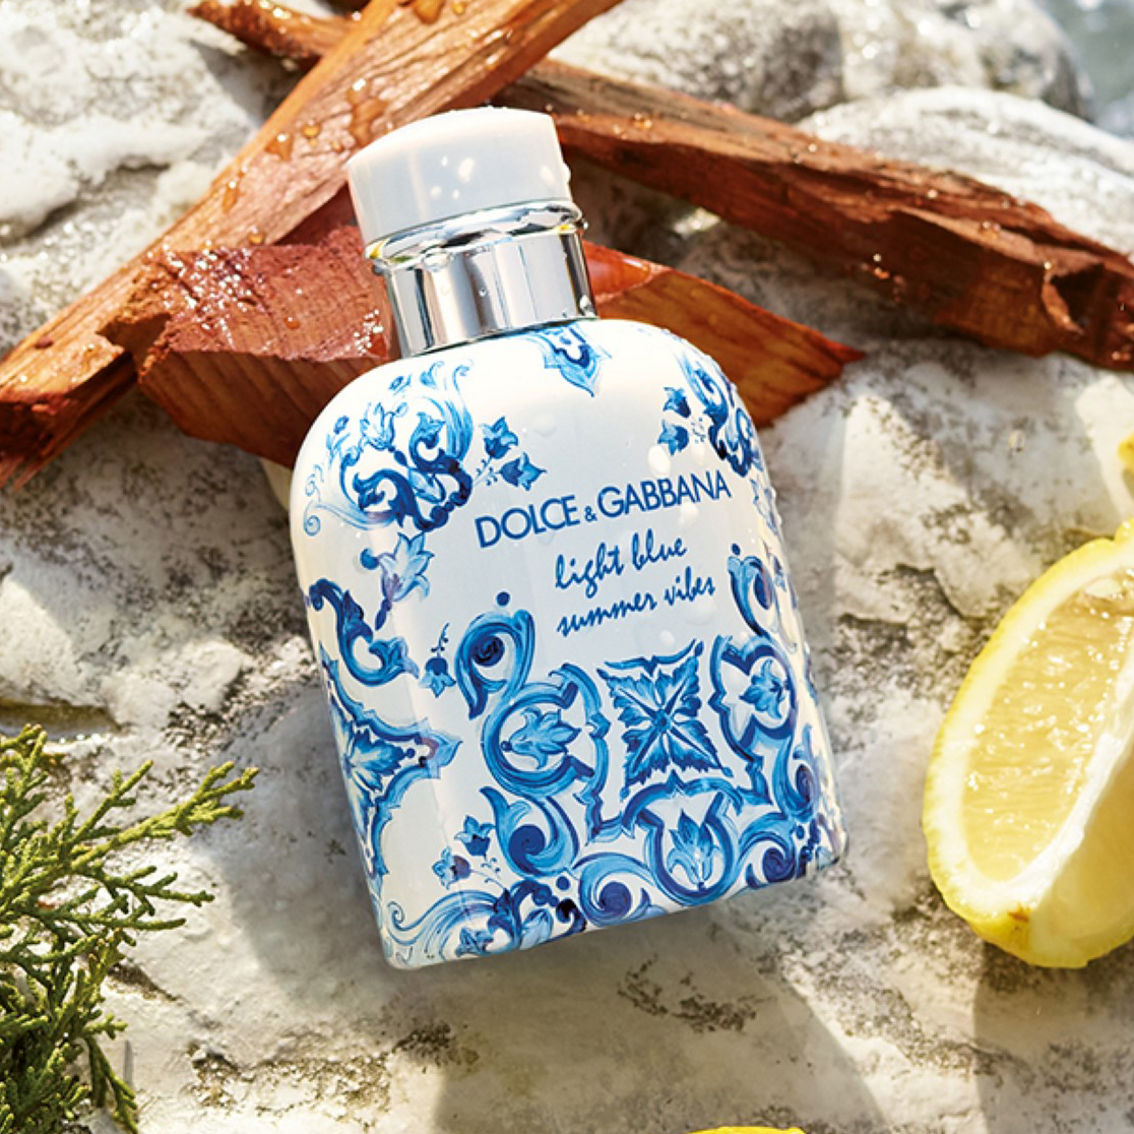 Dolce & Gabbana Light Blue Summer Vibes Pour Homme Eau de Toilette - Image 4 of 4